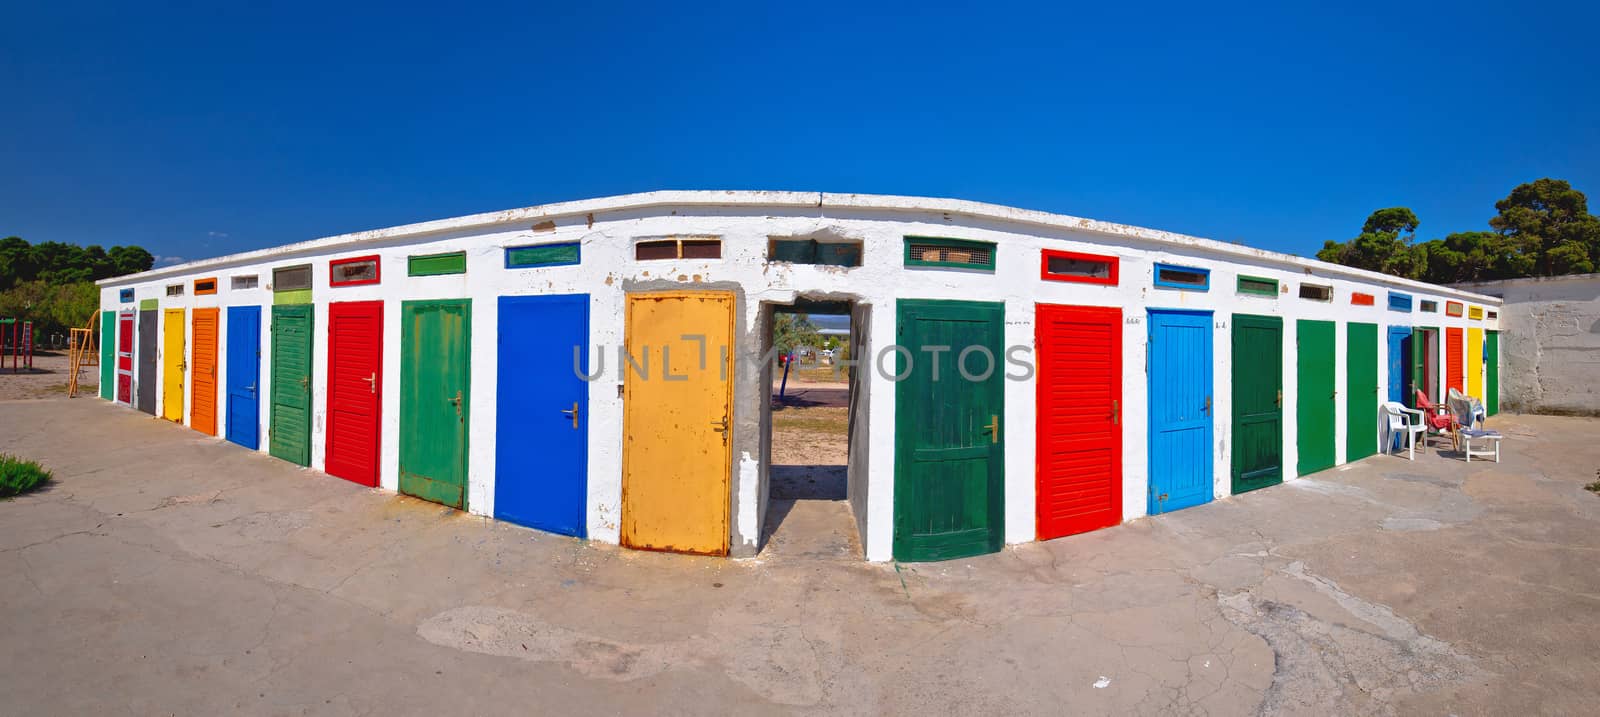 Jadrija beach colorful cabins panoramic view by xbrchx